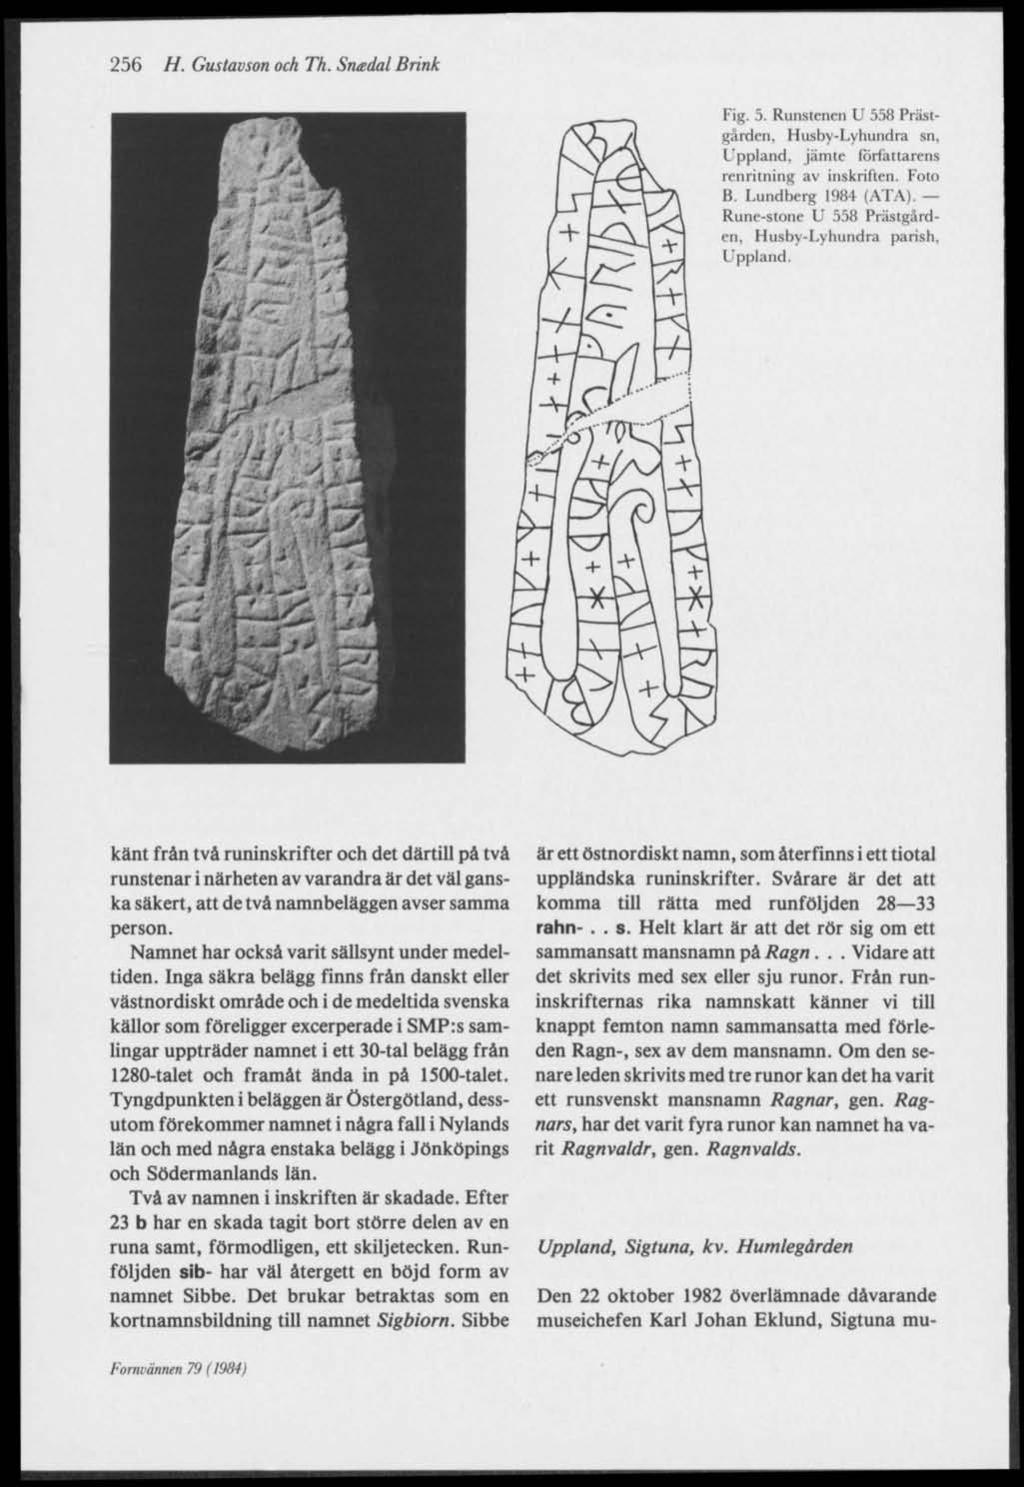 256 H. Gustavson och Th. Sneedal Brink Fig. 5. Runstenen U 558 Prästgärden. Husby-Lyhundra sn, Lppland, jämte författarens renritning av inskriften. Foto B. Lundberg 1984 (ATA).